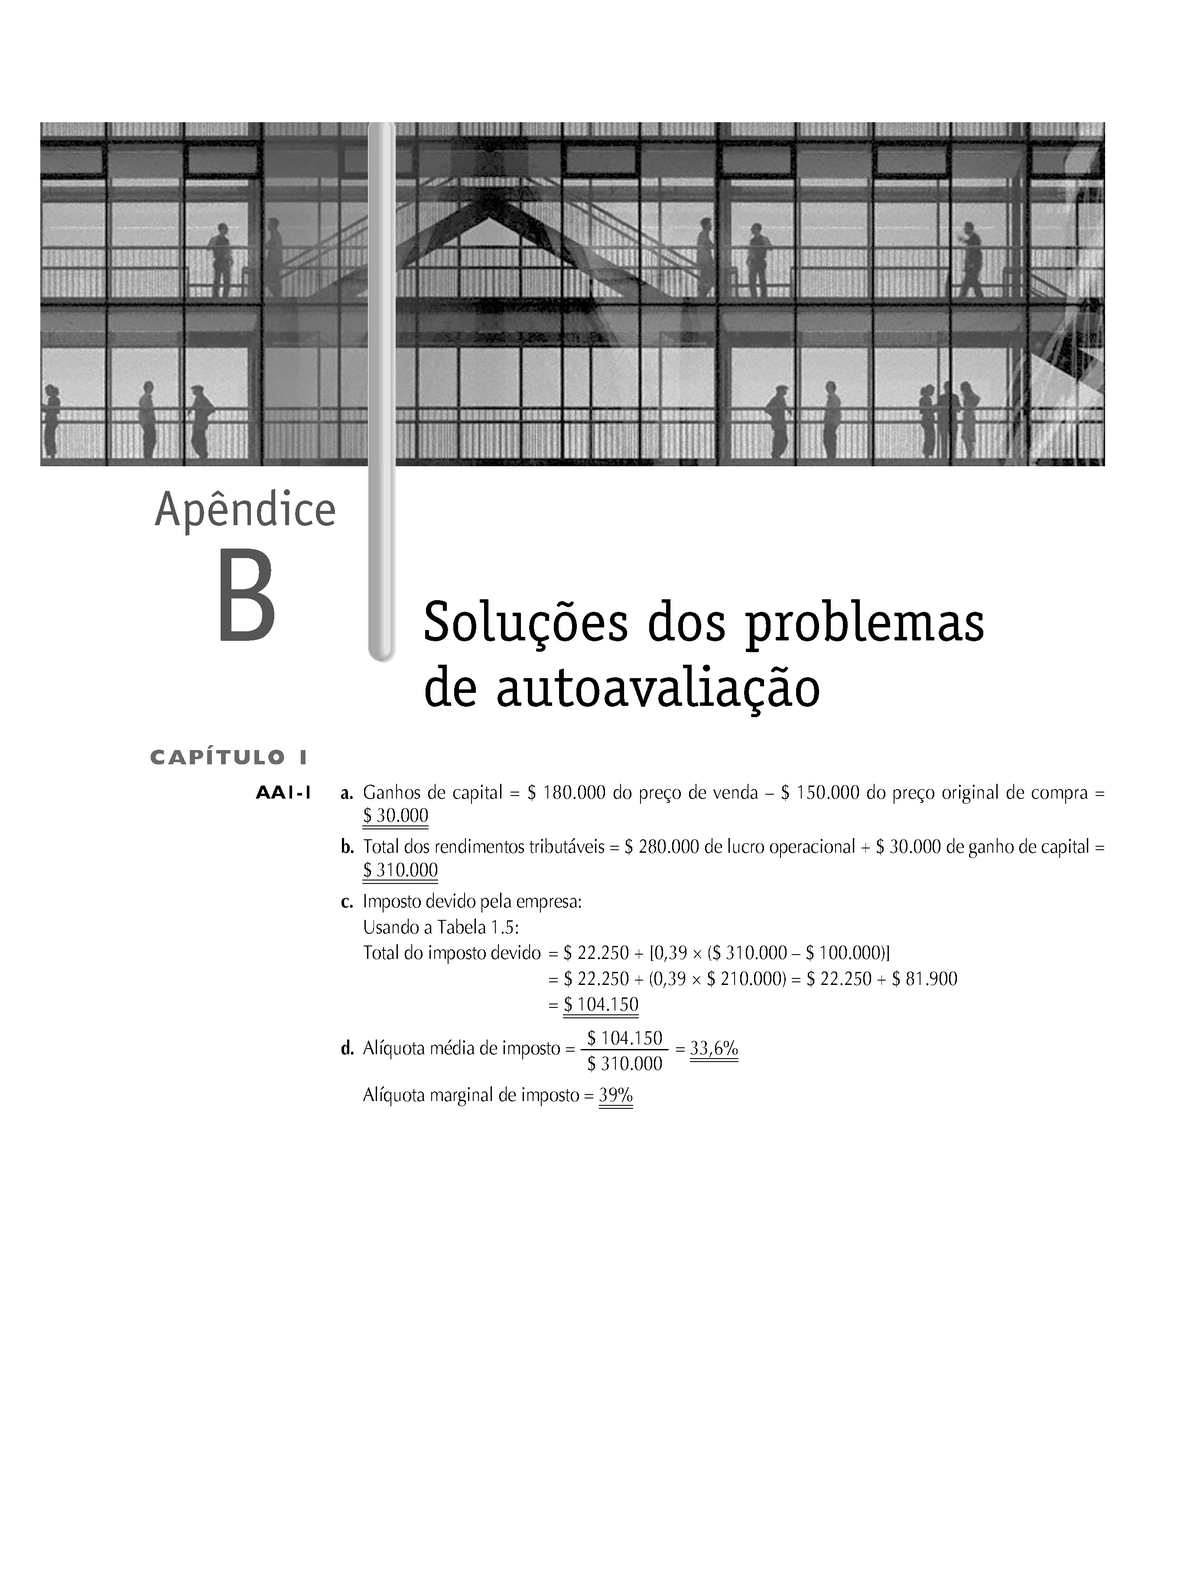 PDF) Inventário de Adiamento de Gratificação (DGI-35): Propriedades  Psicométricas da Versão Brasileira